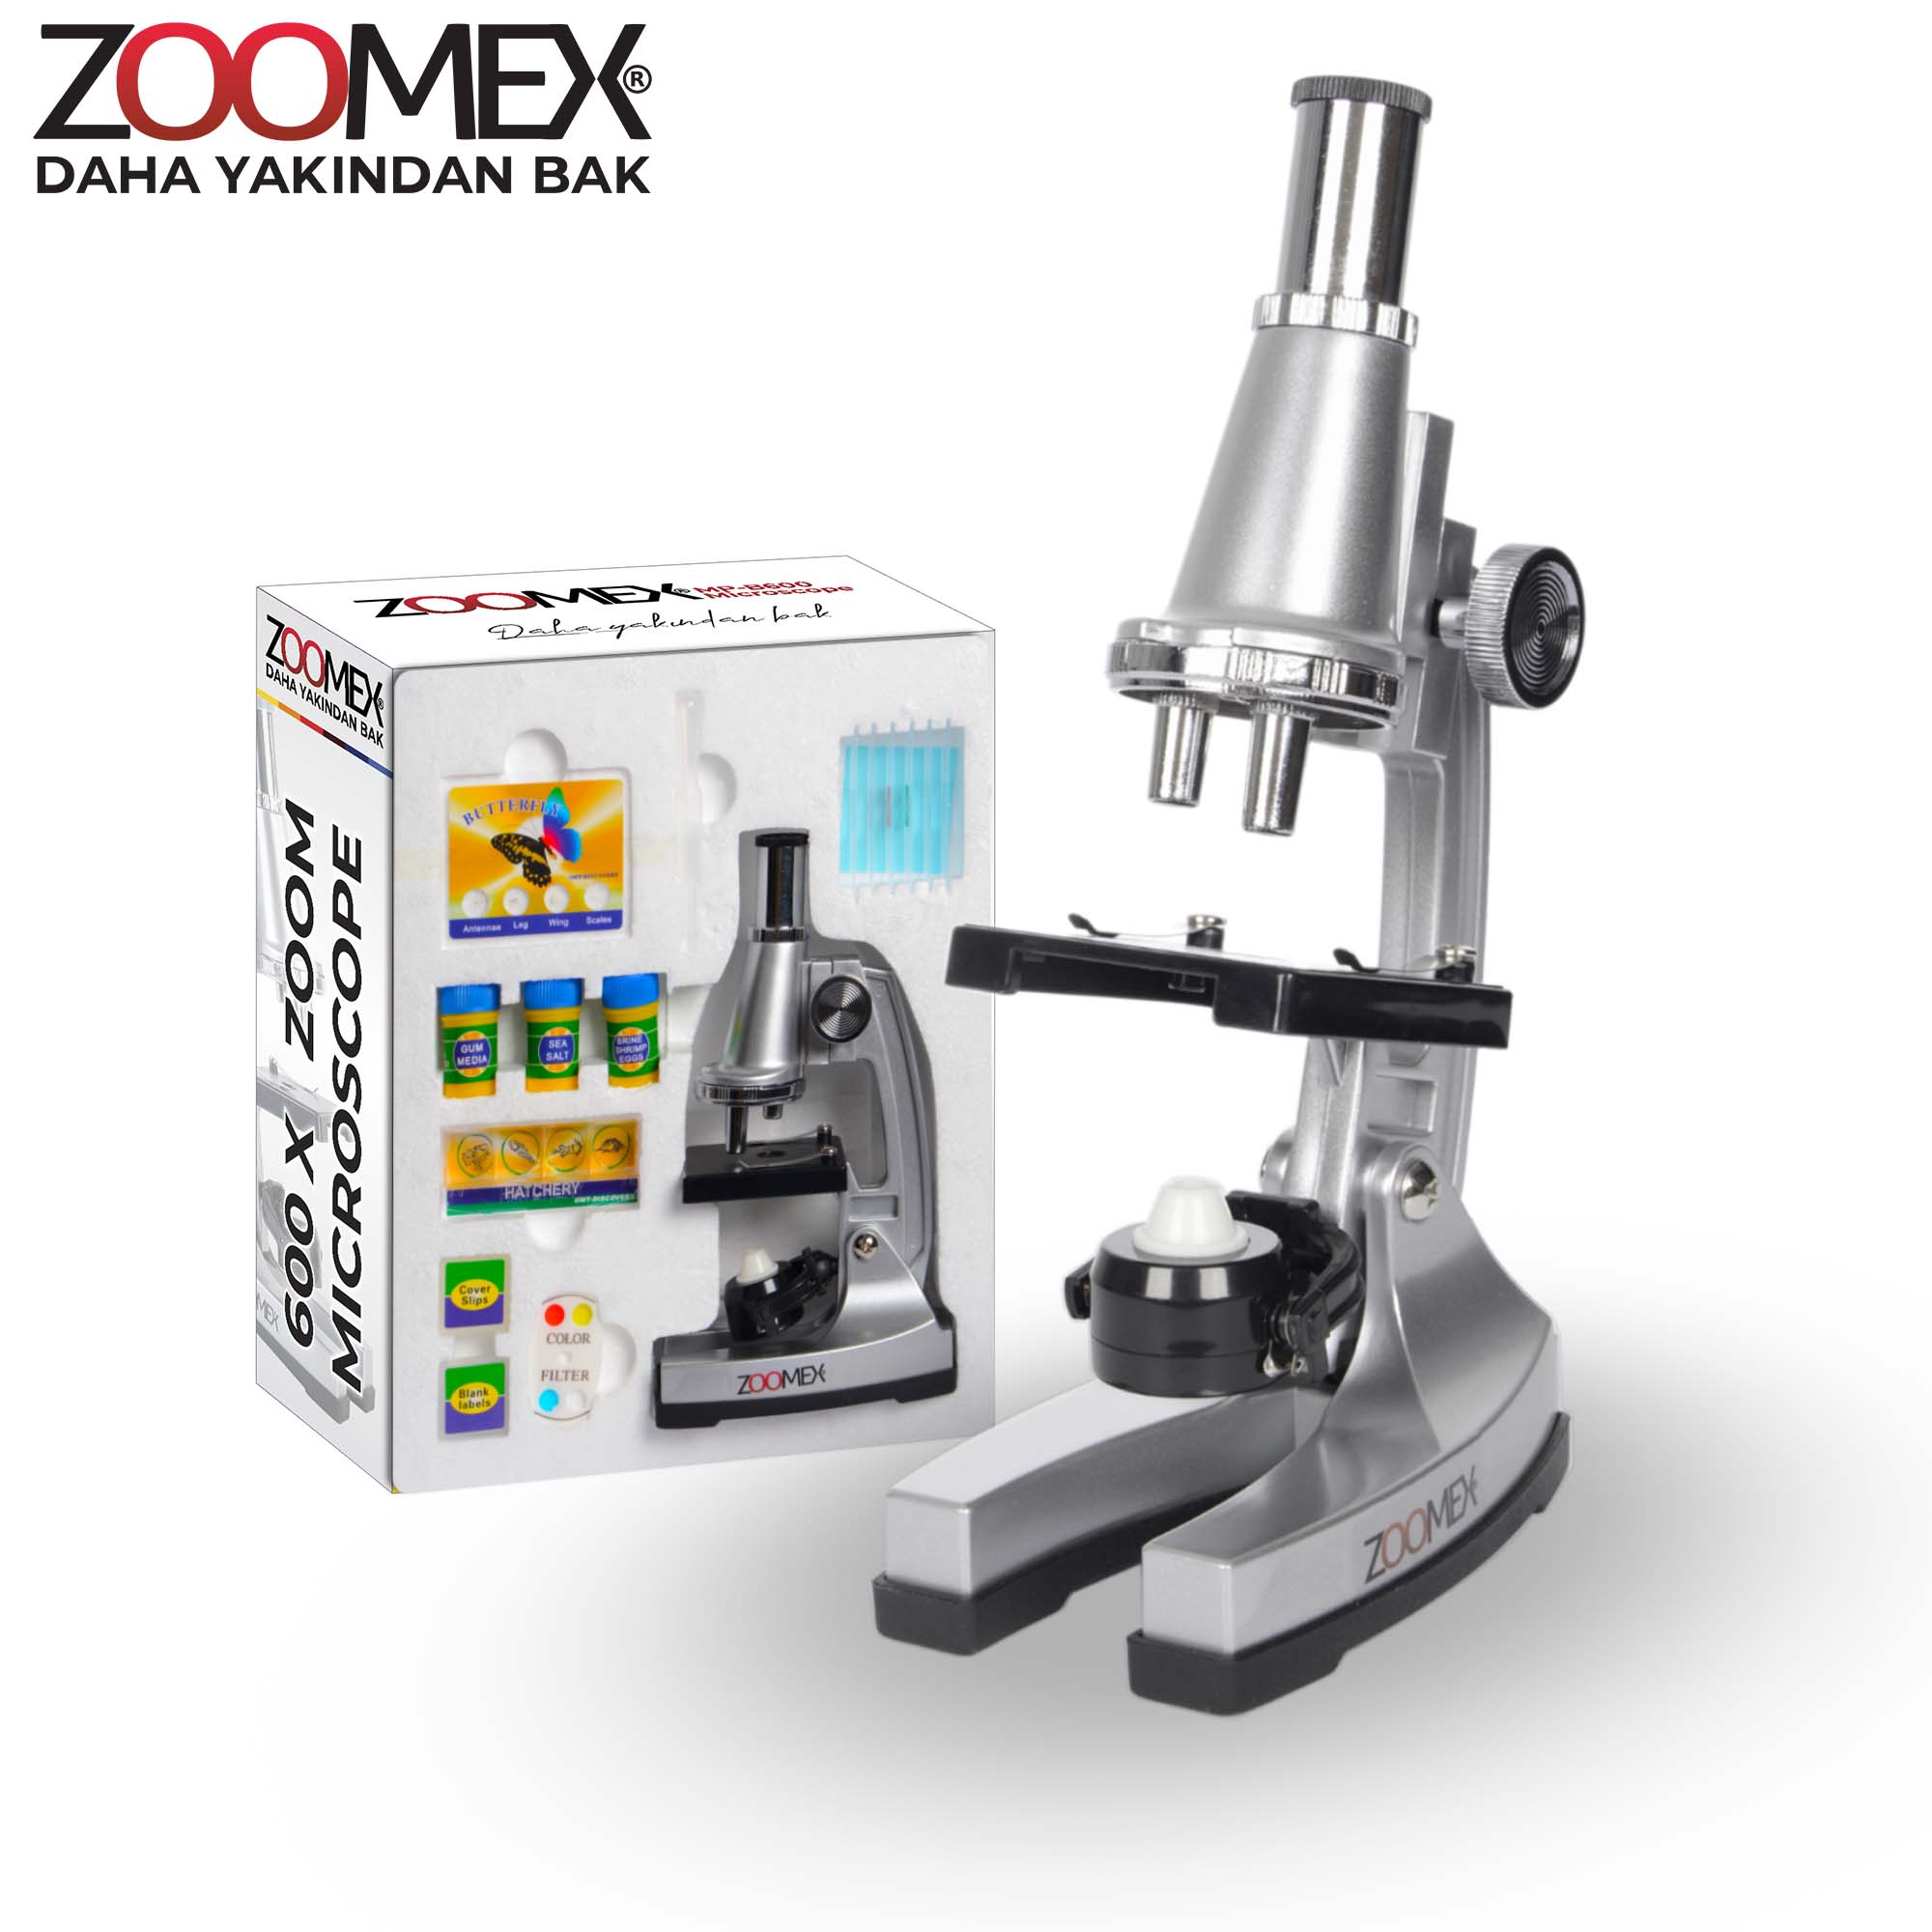 Zoomex Mp-b600 Mikroskop - Eğitici Ve Öğretici - Geleceğin Bilim